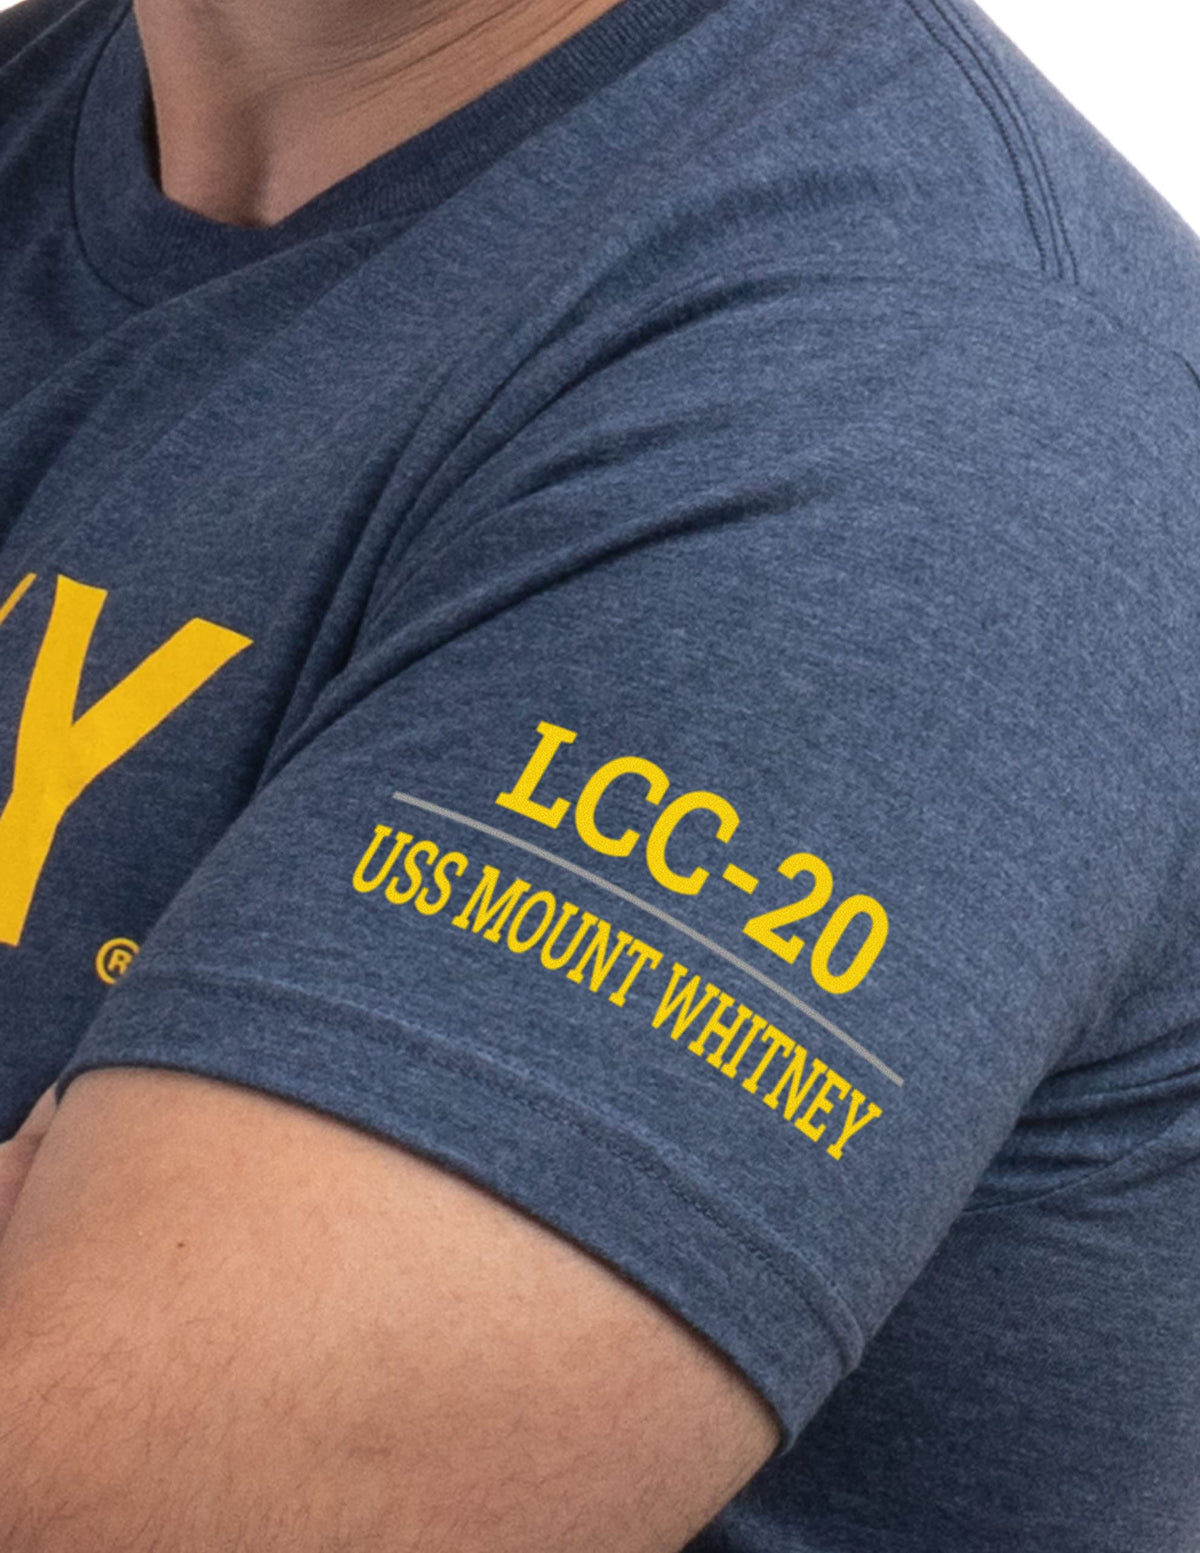 USS Mount Whitney, LCC-20 | U.S. Navy Sailor Veteran USN United States Naval T-shirt for Men Women